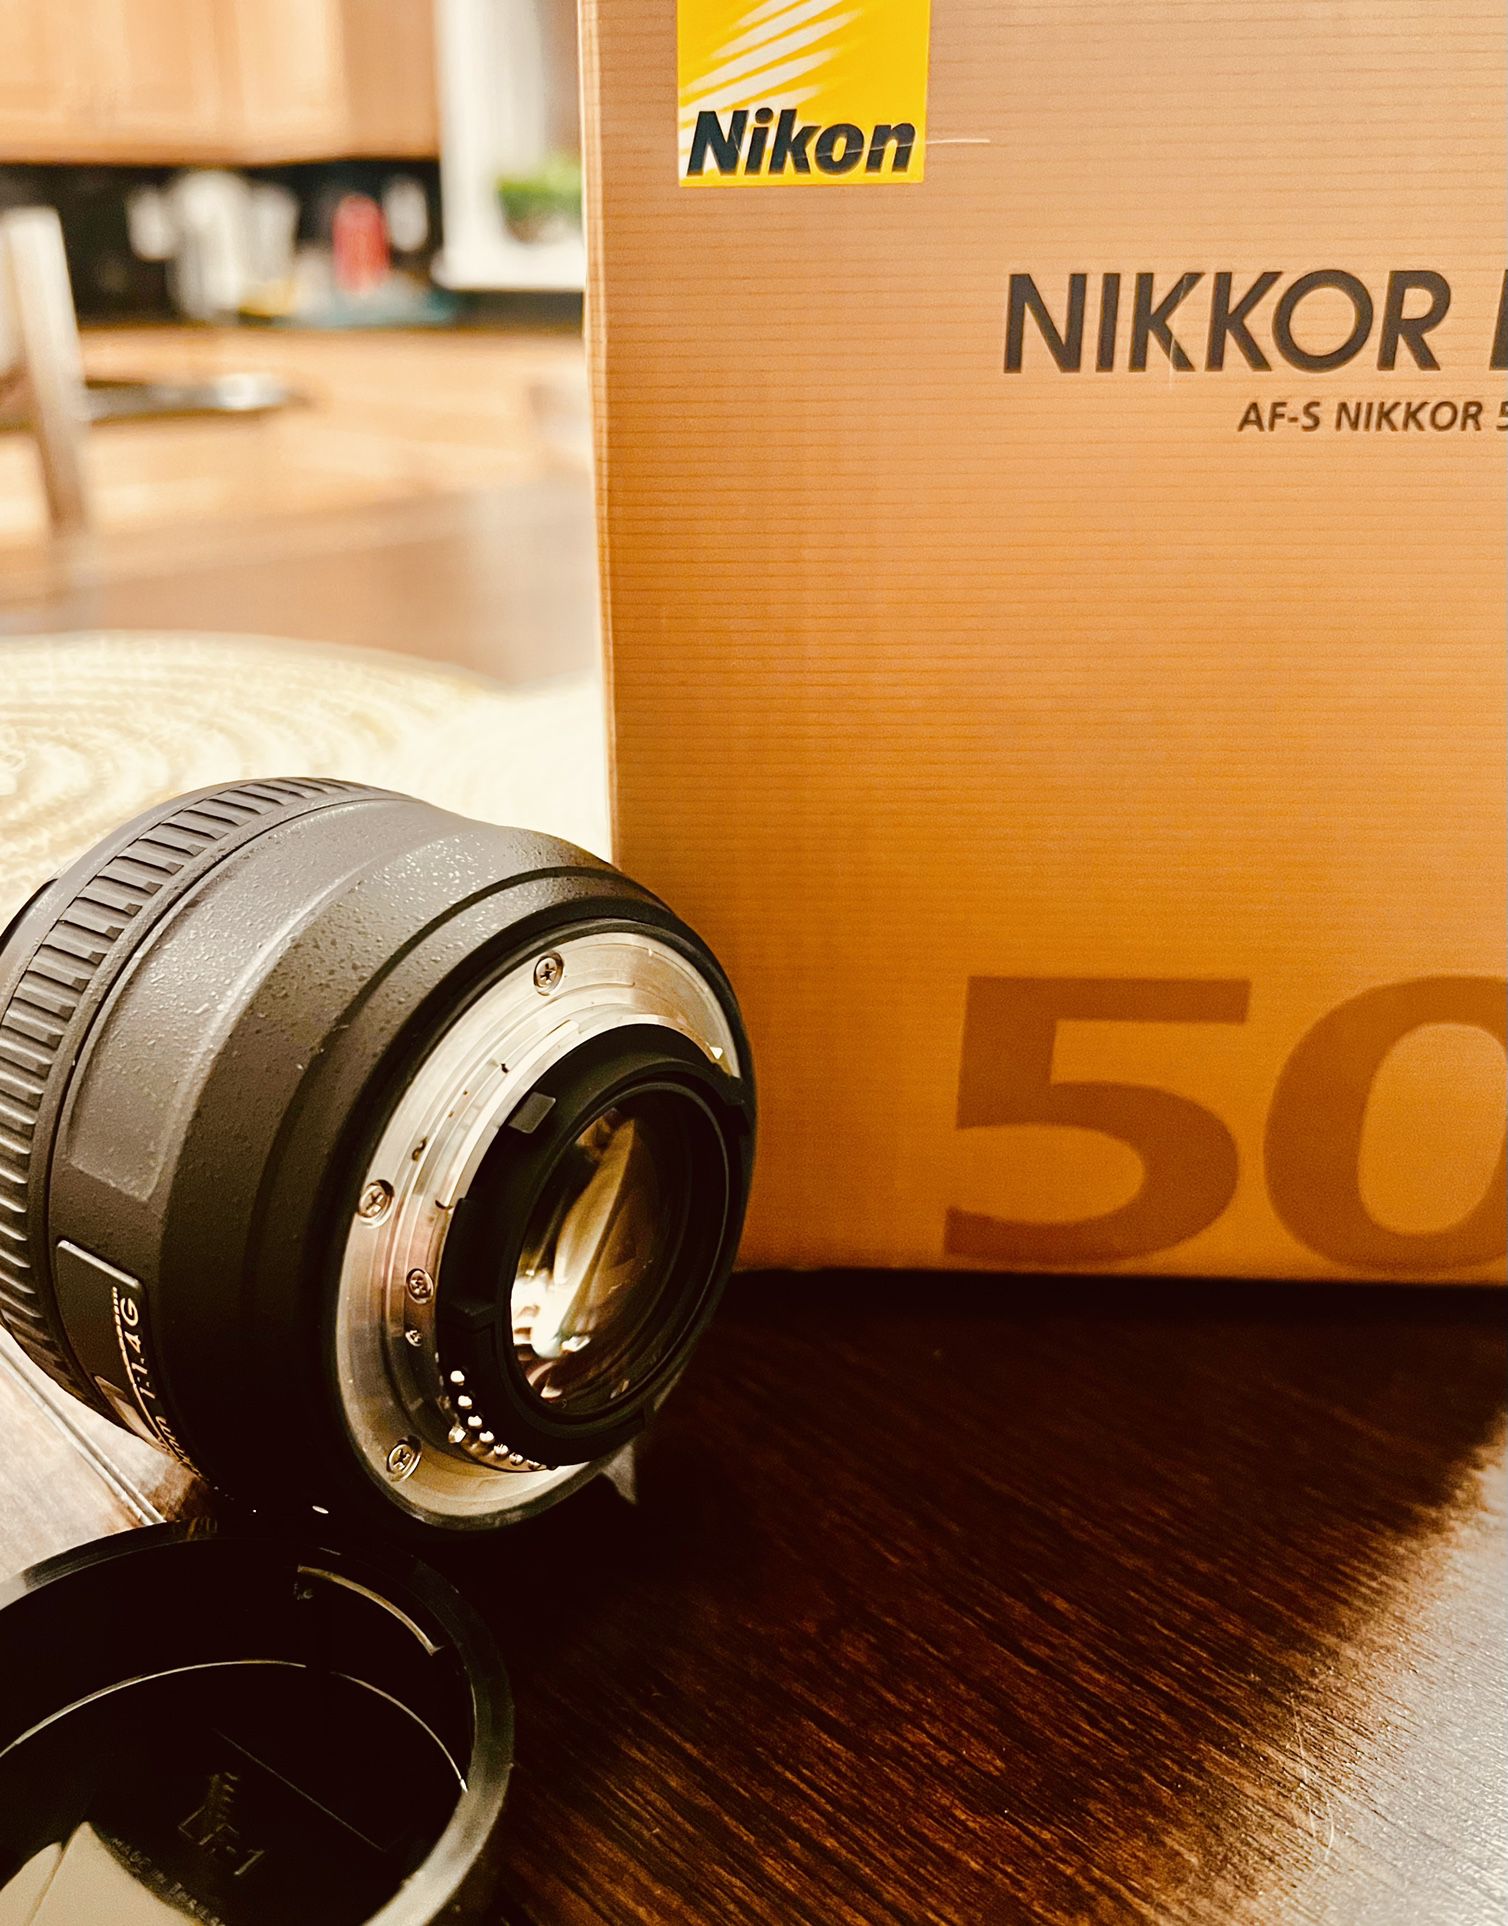 Nikon Nikkor 50mm 1.4G Portrait Lens - Brand New